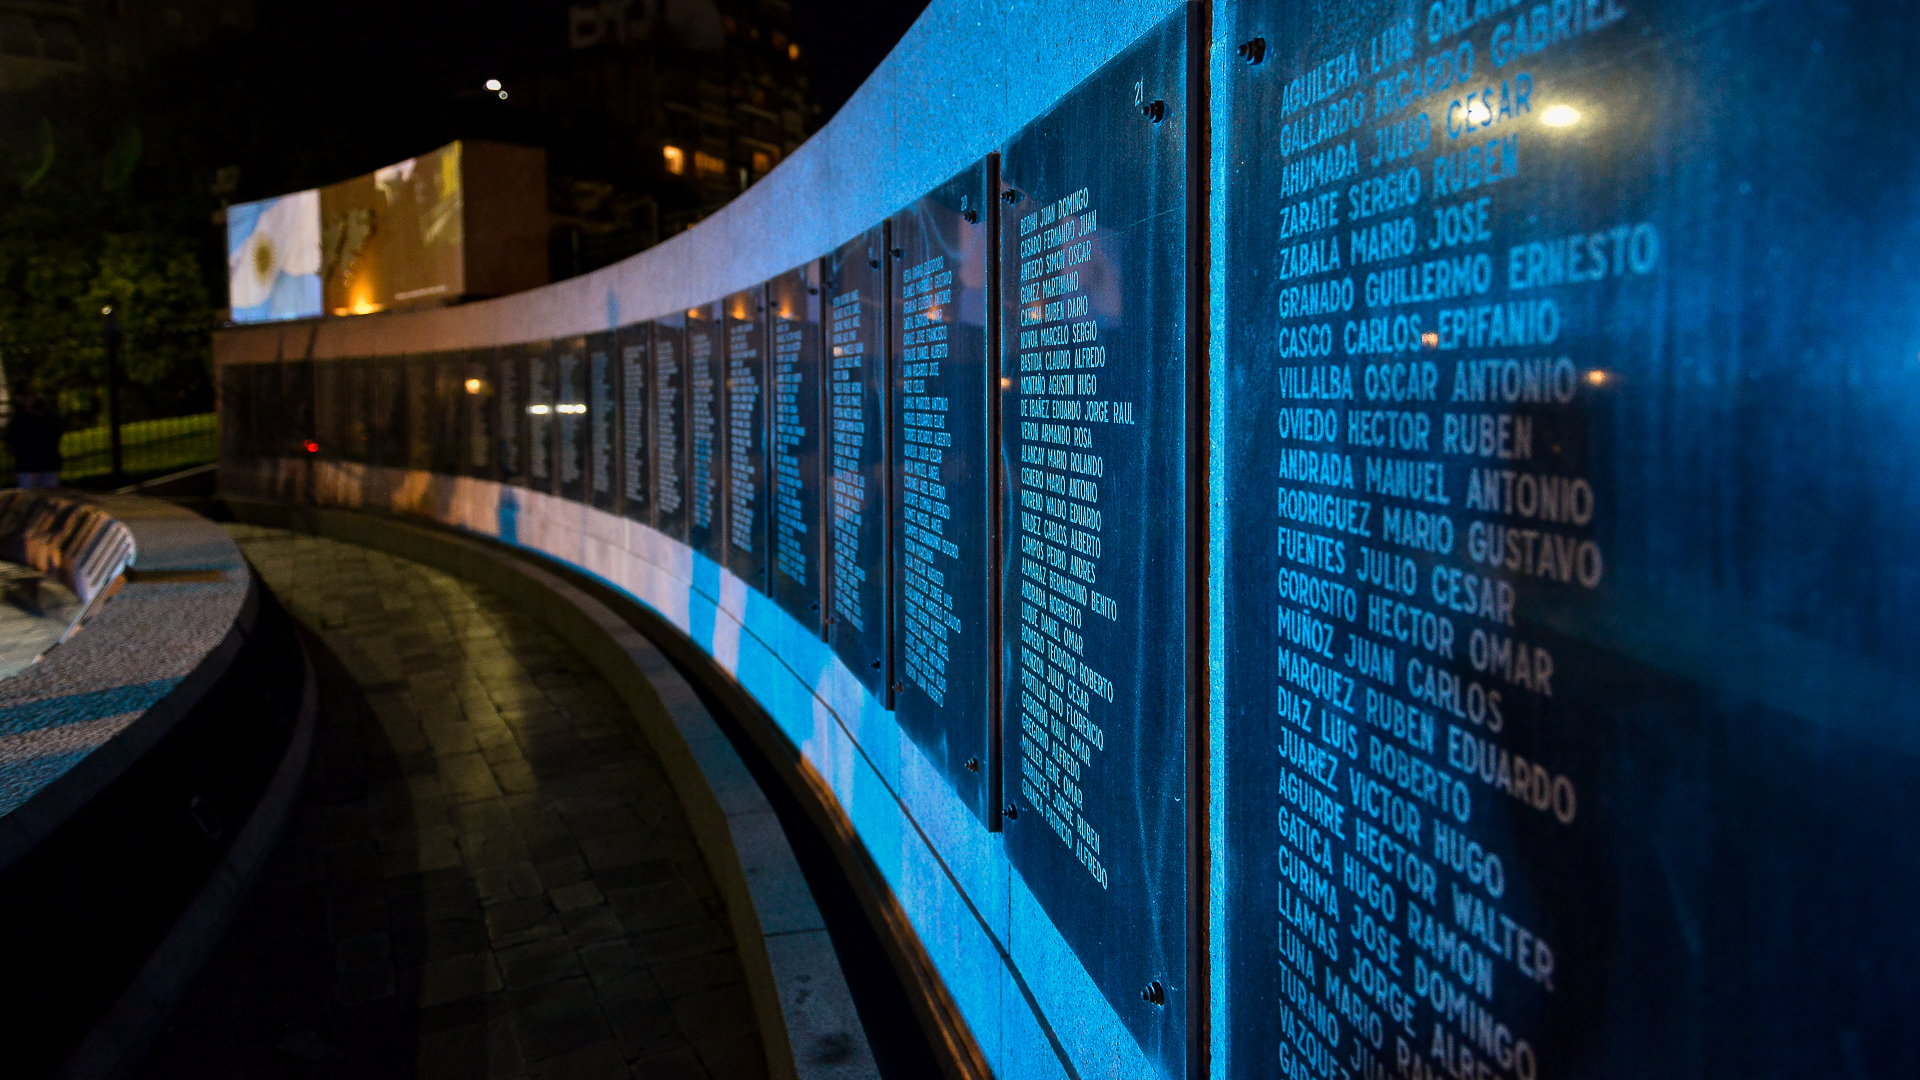 El Cenotafio a los Caídos en Malvinas incluye los hombres de los 631 militares, 16 marinos mercantes y 2 civiles muertos en combate entre el 02 de abril y el 14 de junio de 1982.